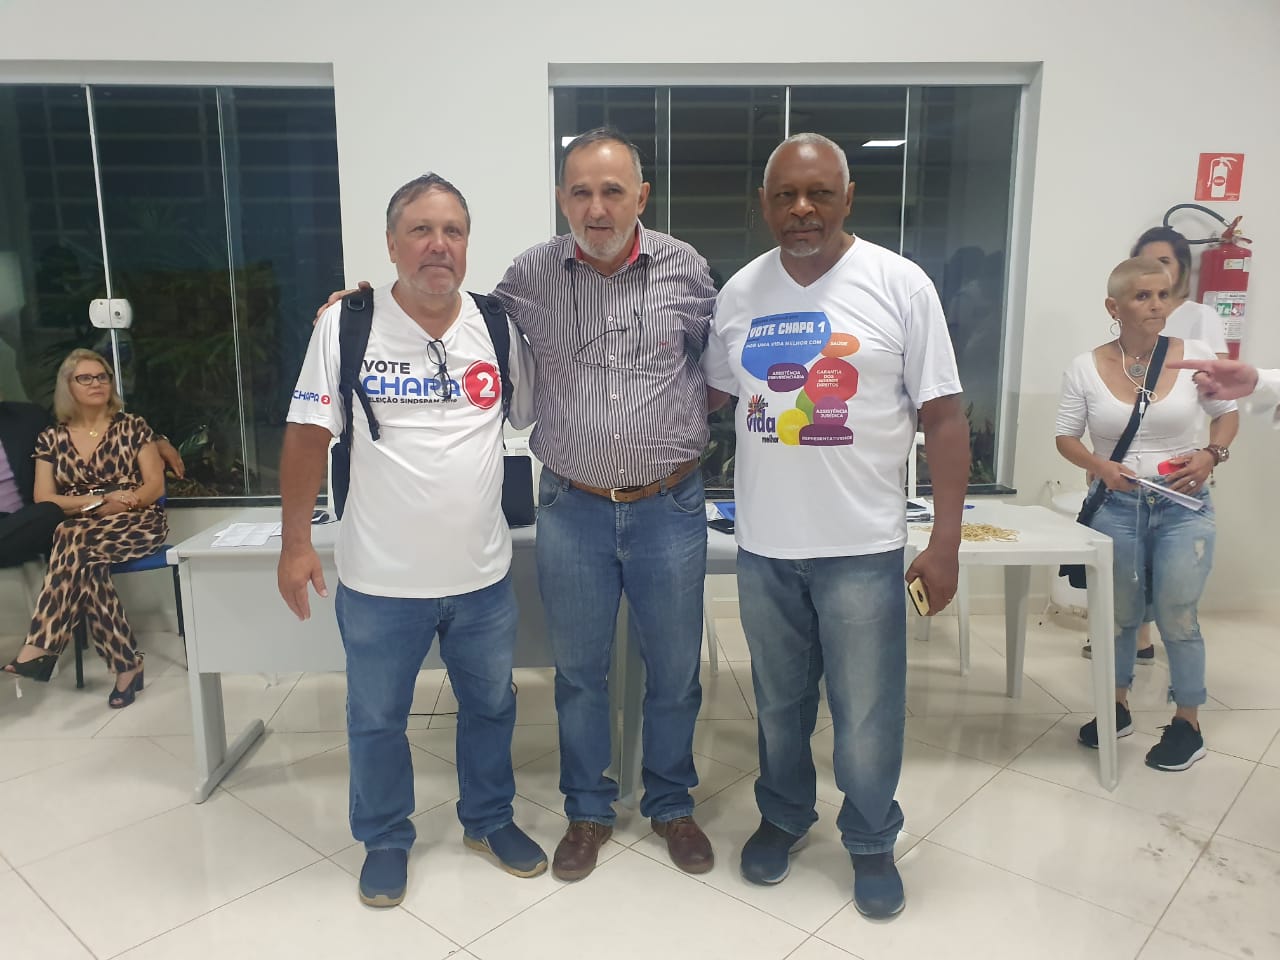 Eleições sindicais na cidade de São Carlos foram finalizadas na última sexta-feira